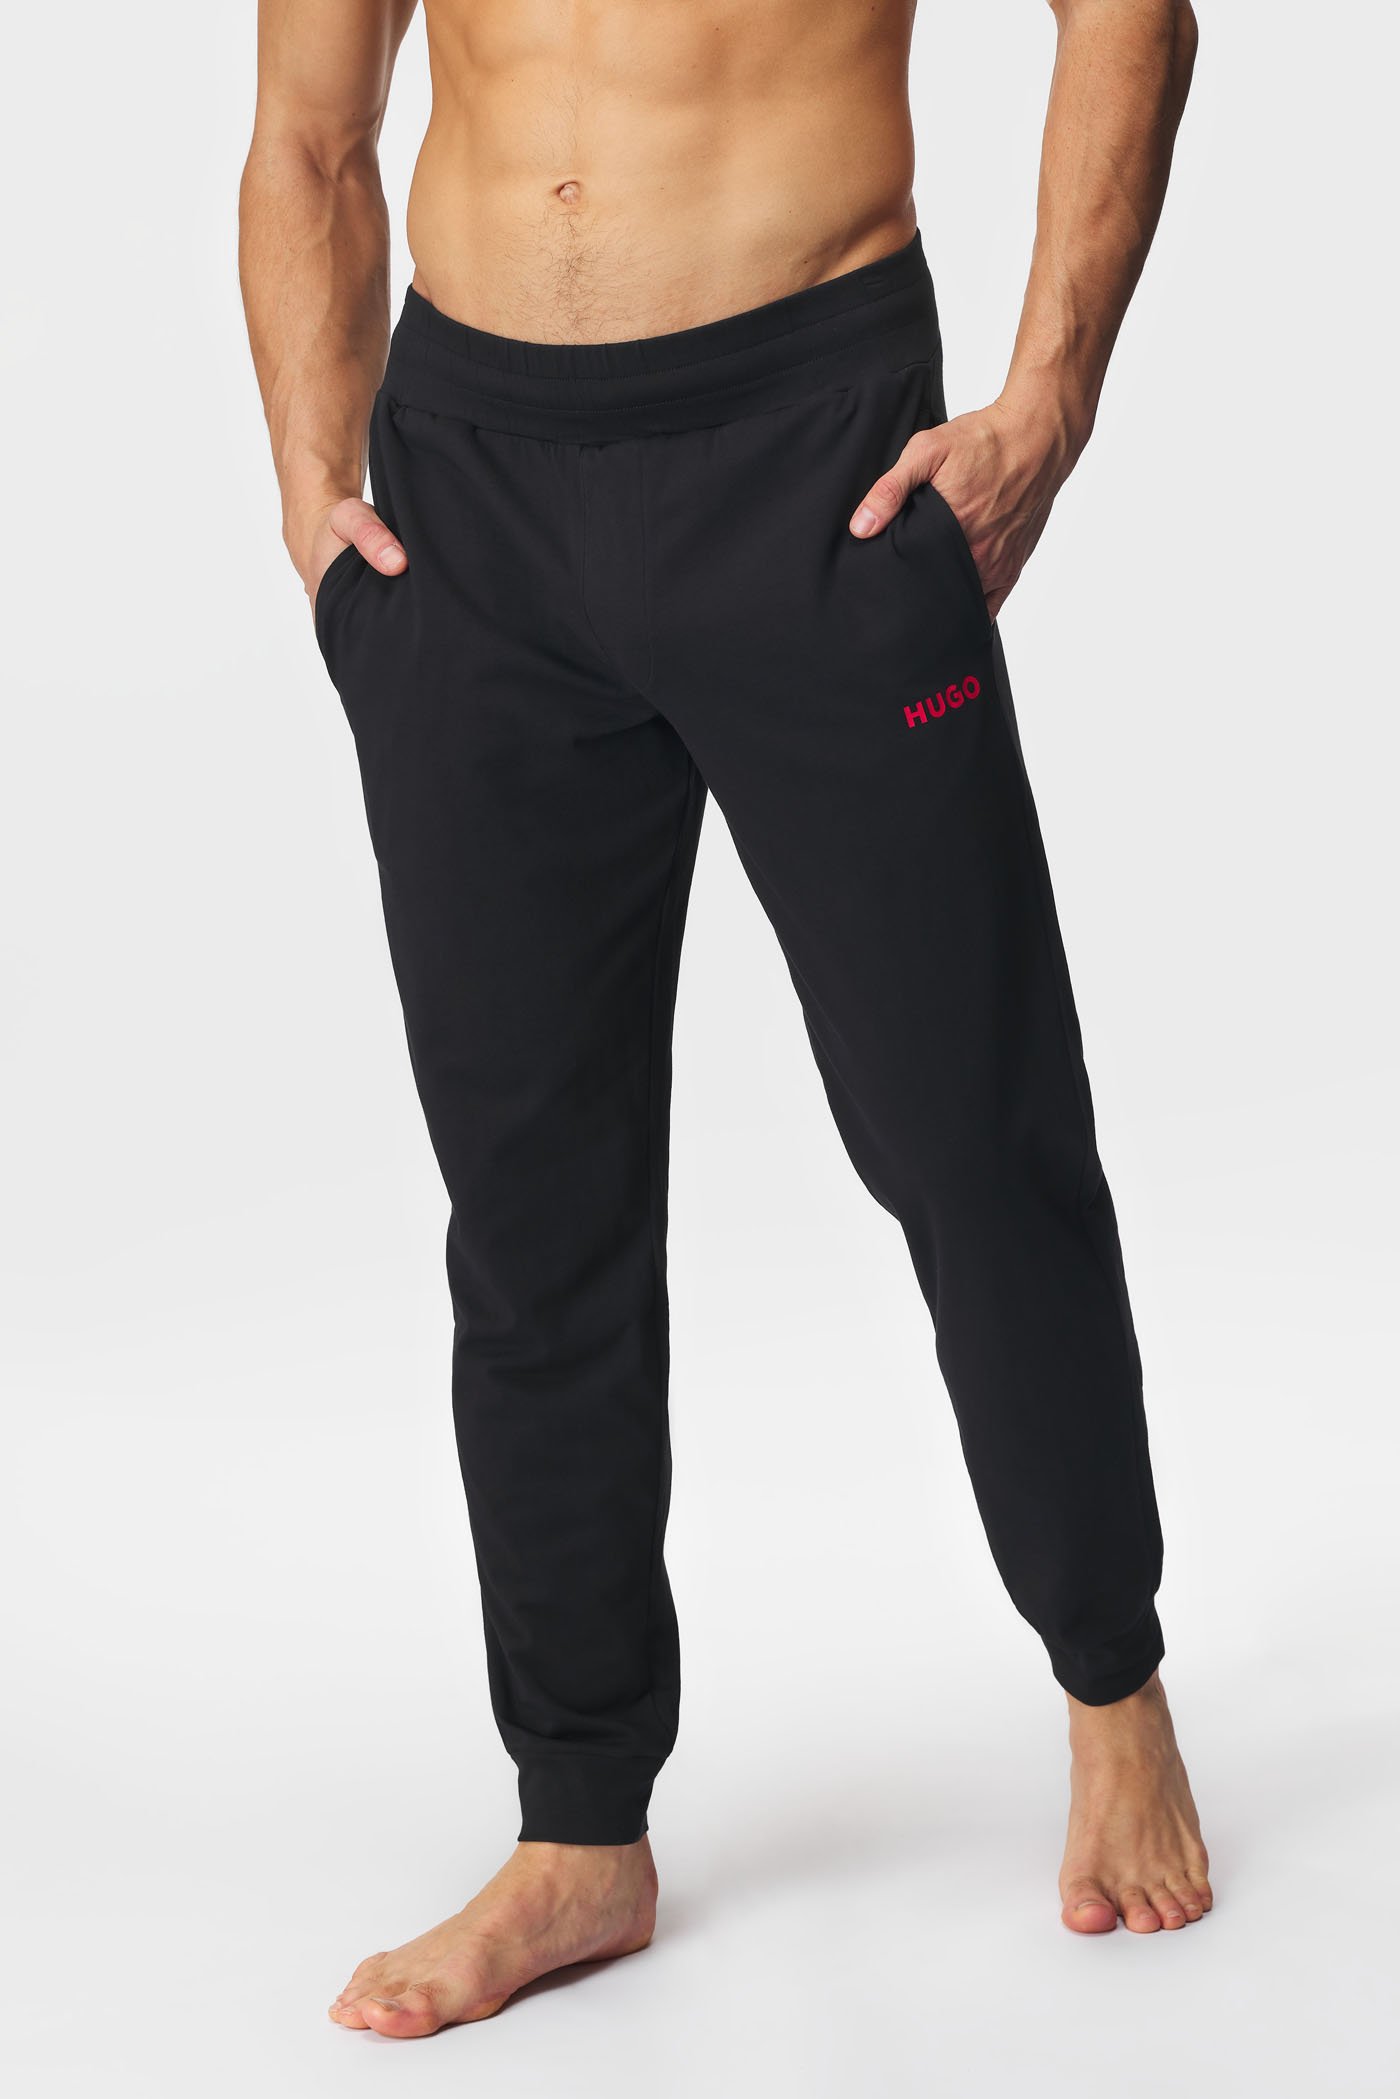 Παντελόνι πιτζάμας HUGO Linked pants CW | Astratex.gr